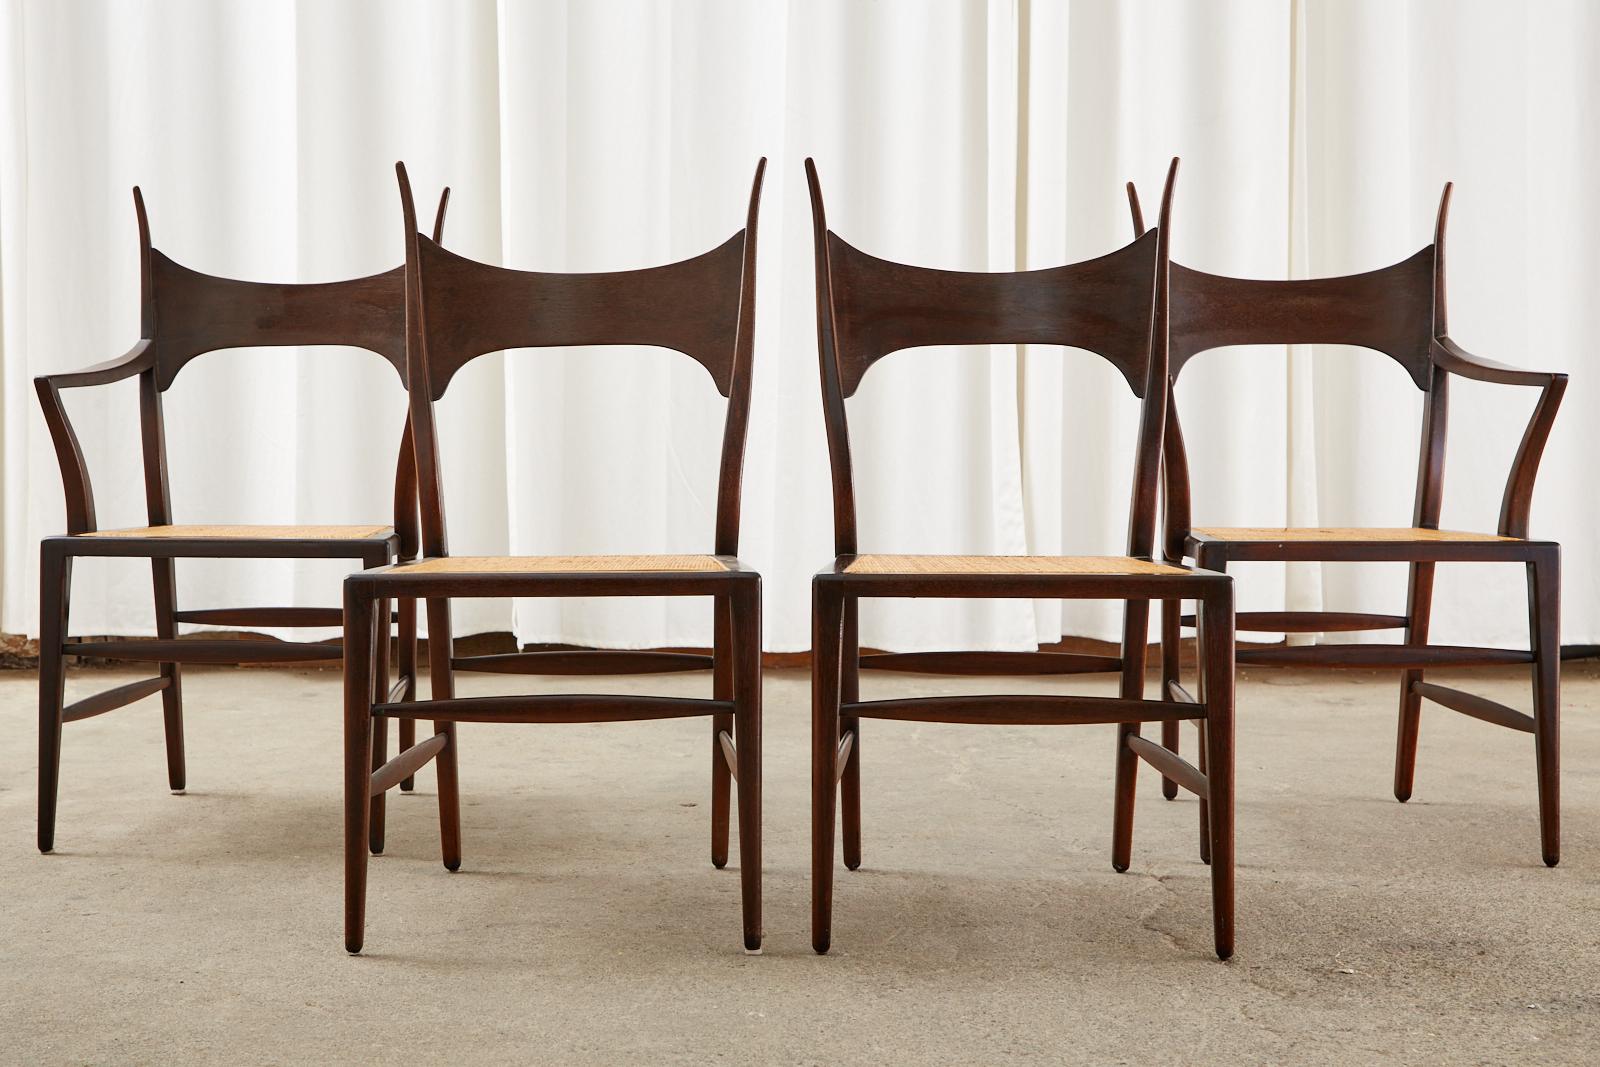 Ensemble iconique et rare de quatre chaises en bois cornu conçues par Edward Wormley pour Dunbar. Les chaises de salle à manger du modèle 5580 sont fabriquées en acajou avec une assise cannée. Il s'agit sans doute des plus beaux modèles de chaises